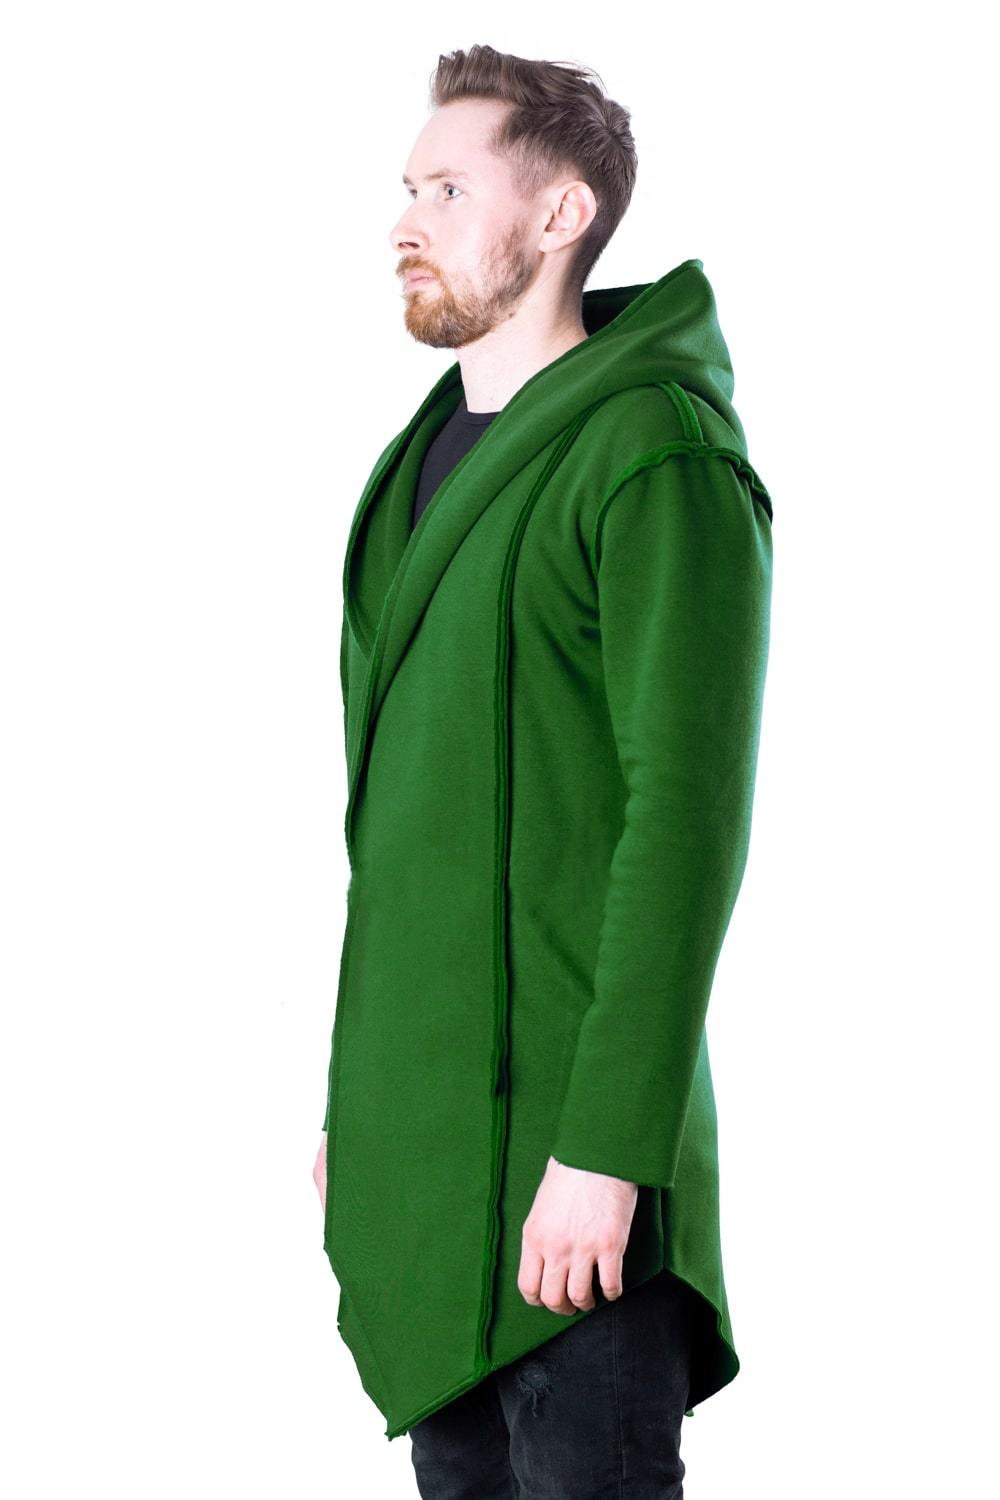 TheG Man Designer Cardigan 2.0 // green